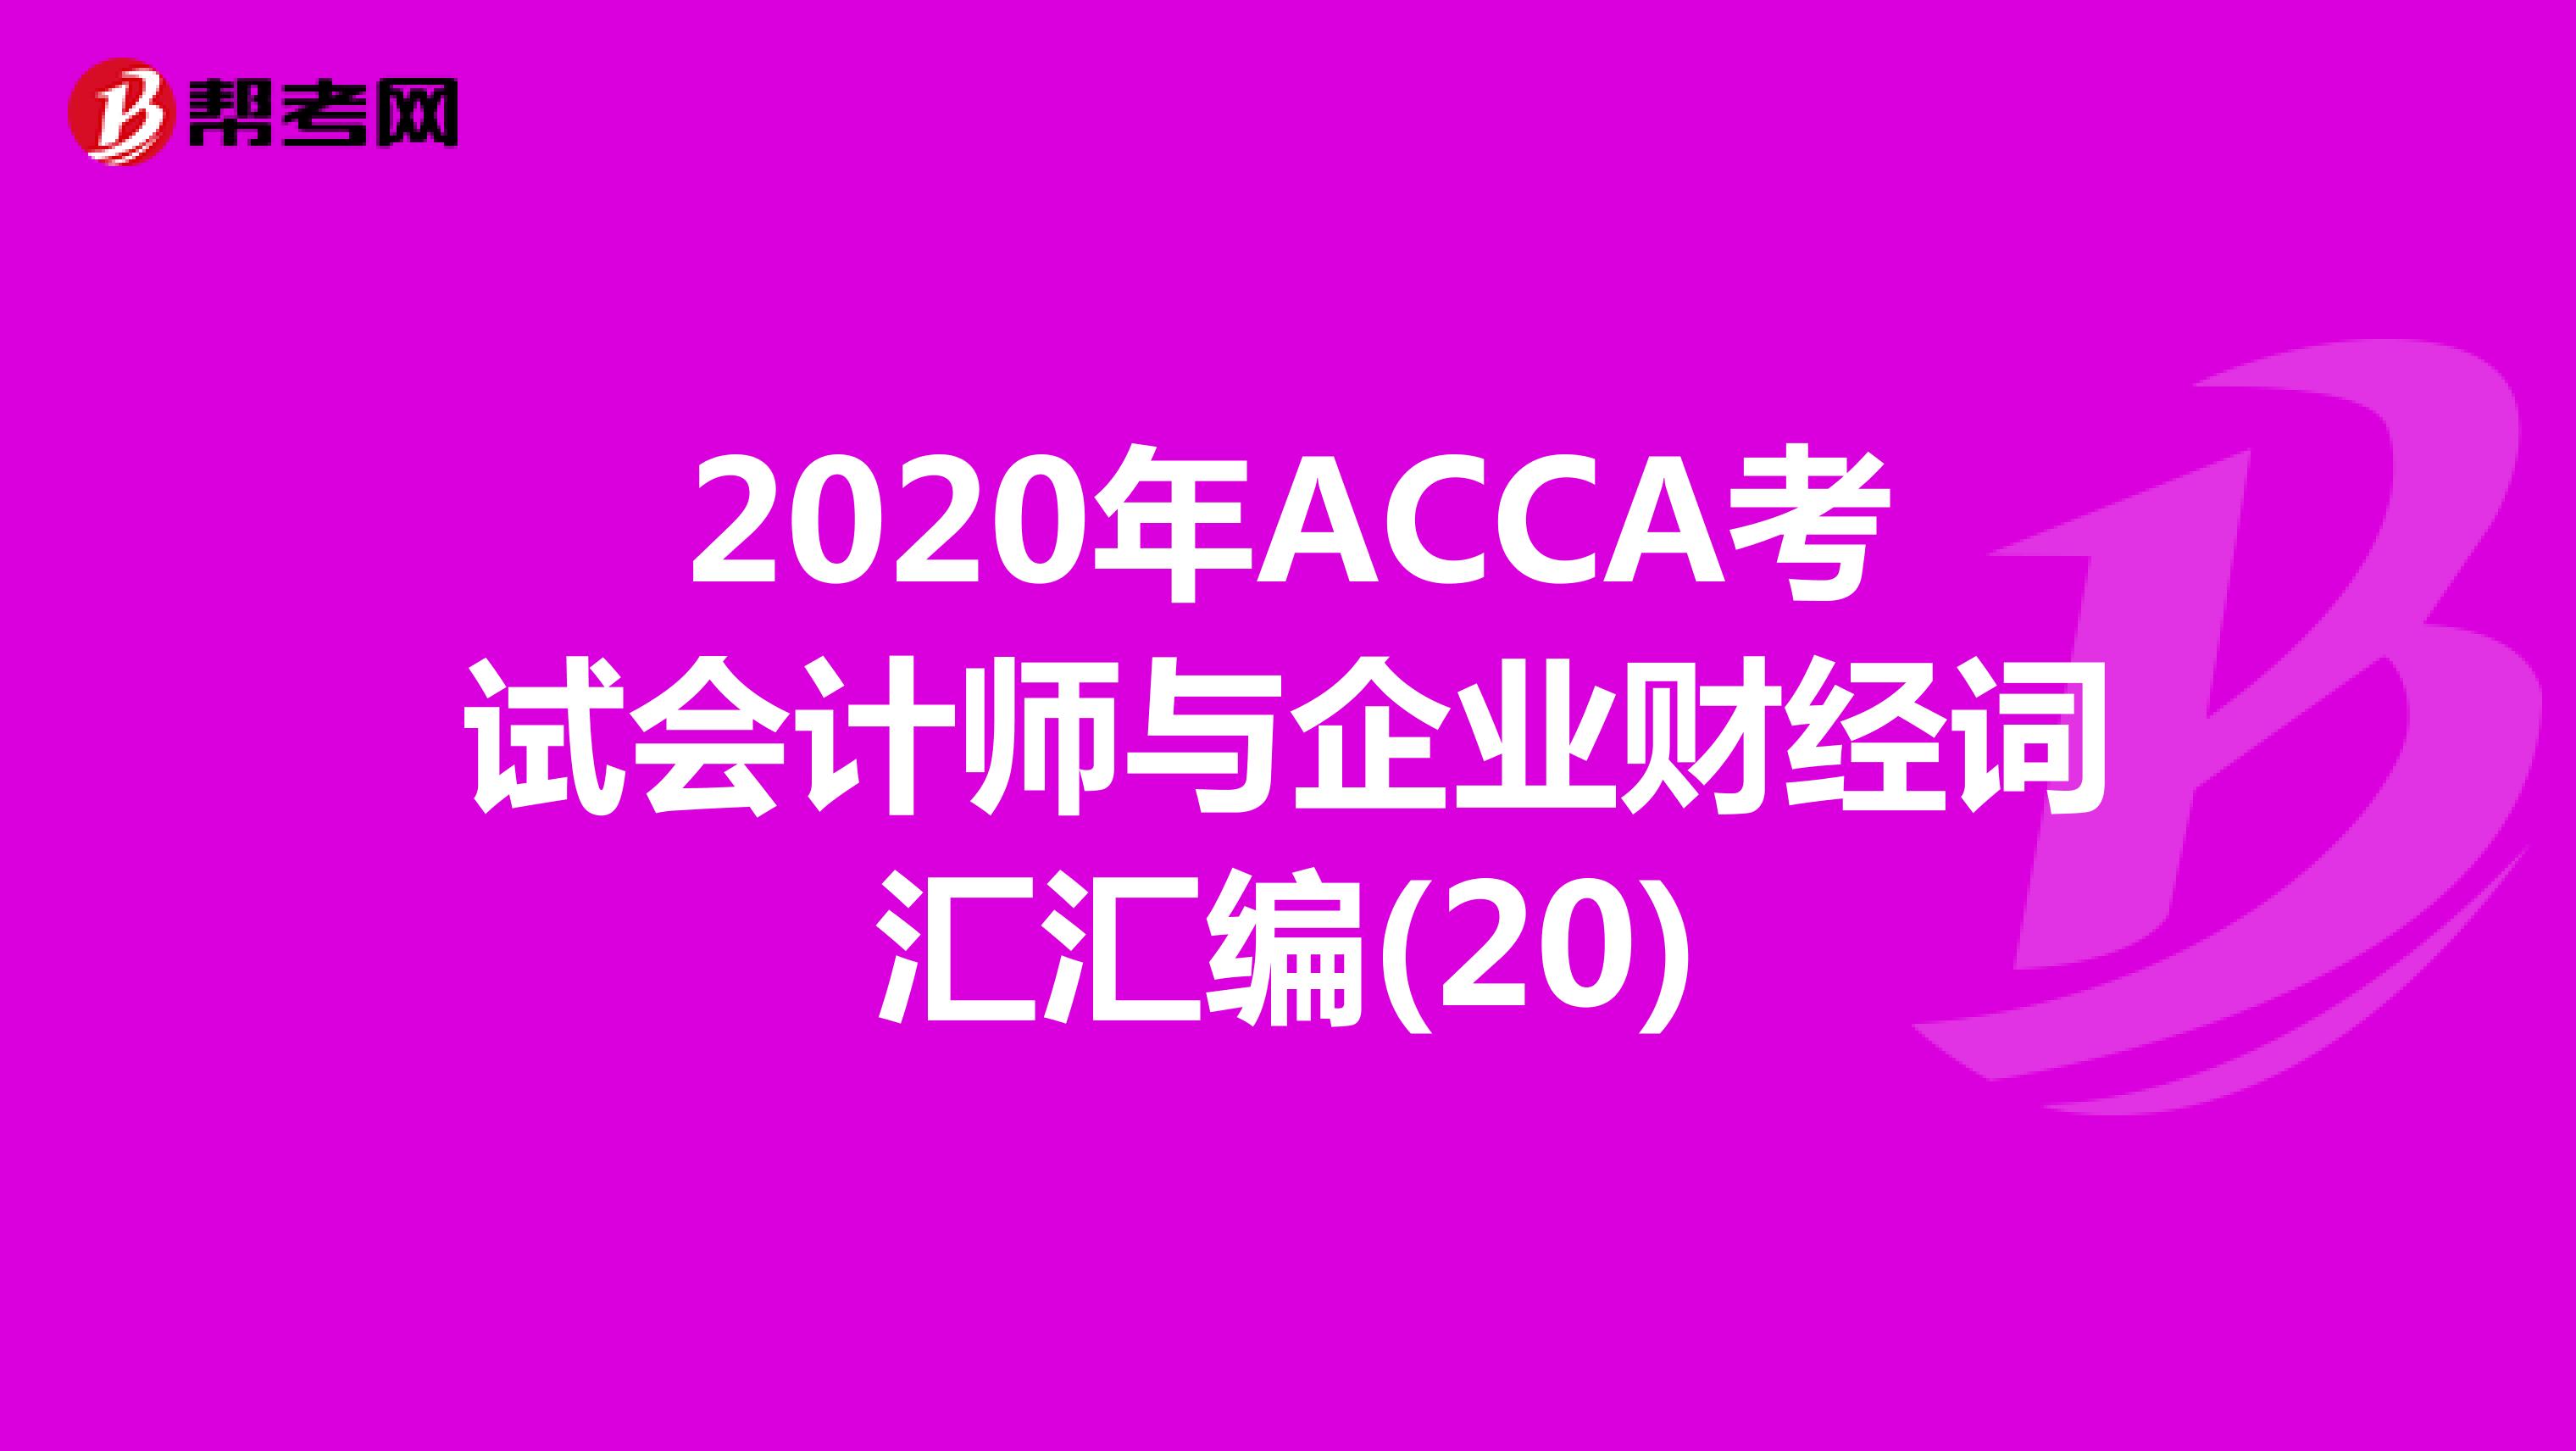 2020年ACCA考试会计师与企业财经词汇汇编(20)